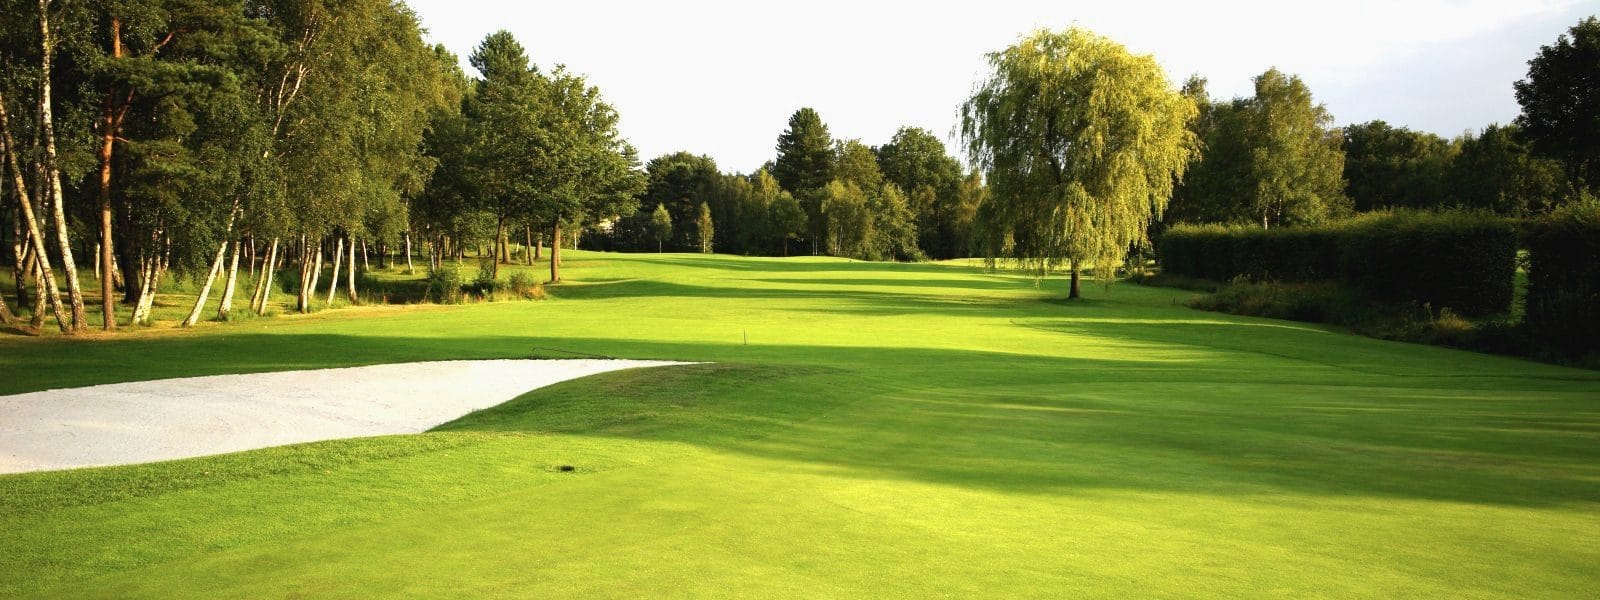 Brasschaat Open Golf, Golf in Flanders, Belgium - Next Golf